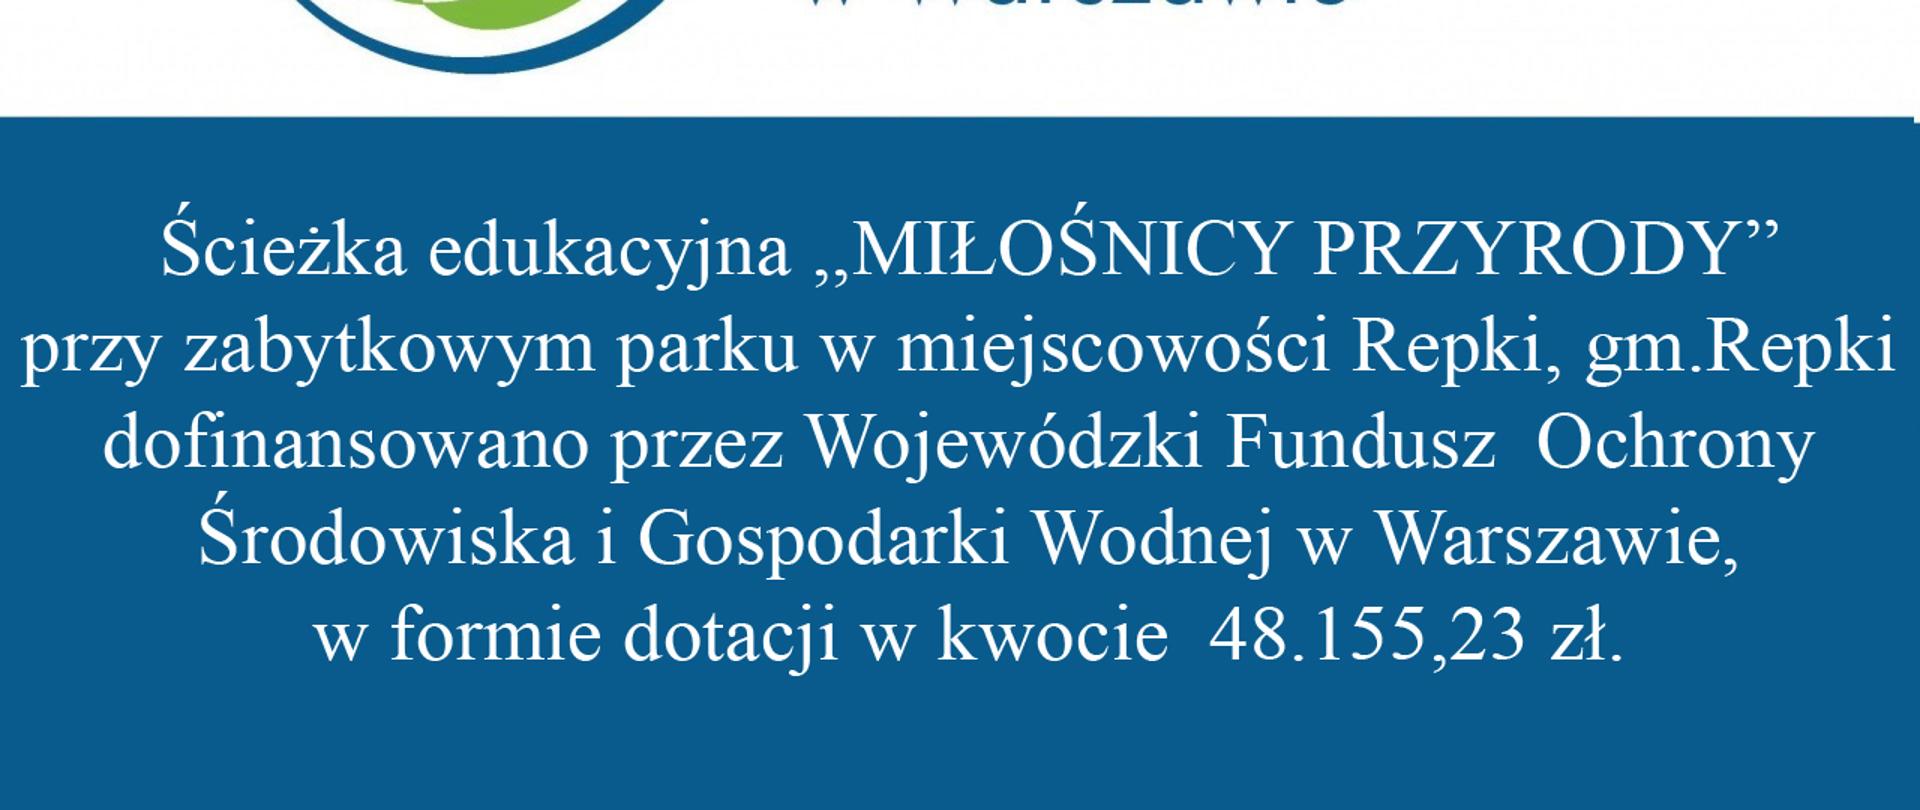 Ścieżka edukacyjna ,,MIŁOŚNICY PRZYRODY” przy zabytkowym parku w miejscowości Repki, gm. Repki dofinansowana przez Wojewódzki Fundusz Ochrony Środowiska i Gospodarki Wodnej w Warszawie, w formie dotacji w kwocie 48.155,23 zł.